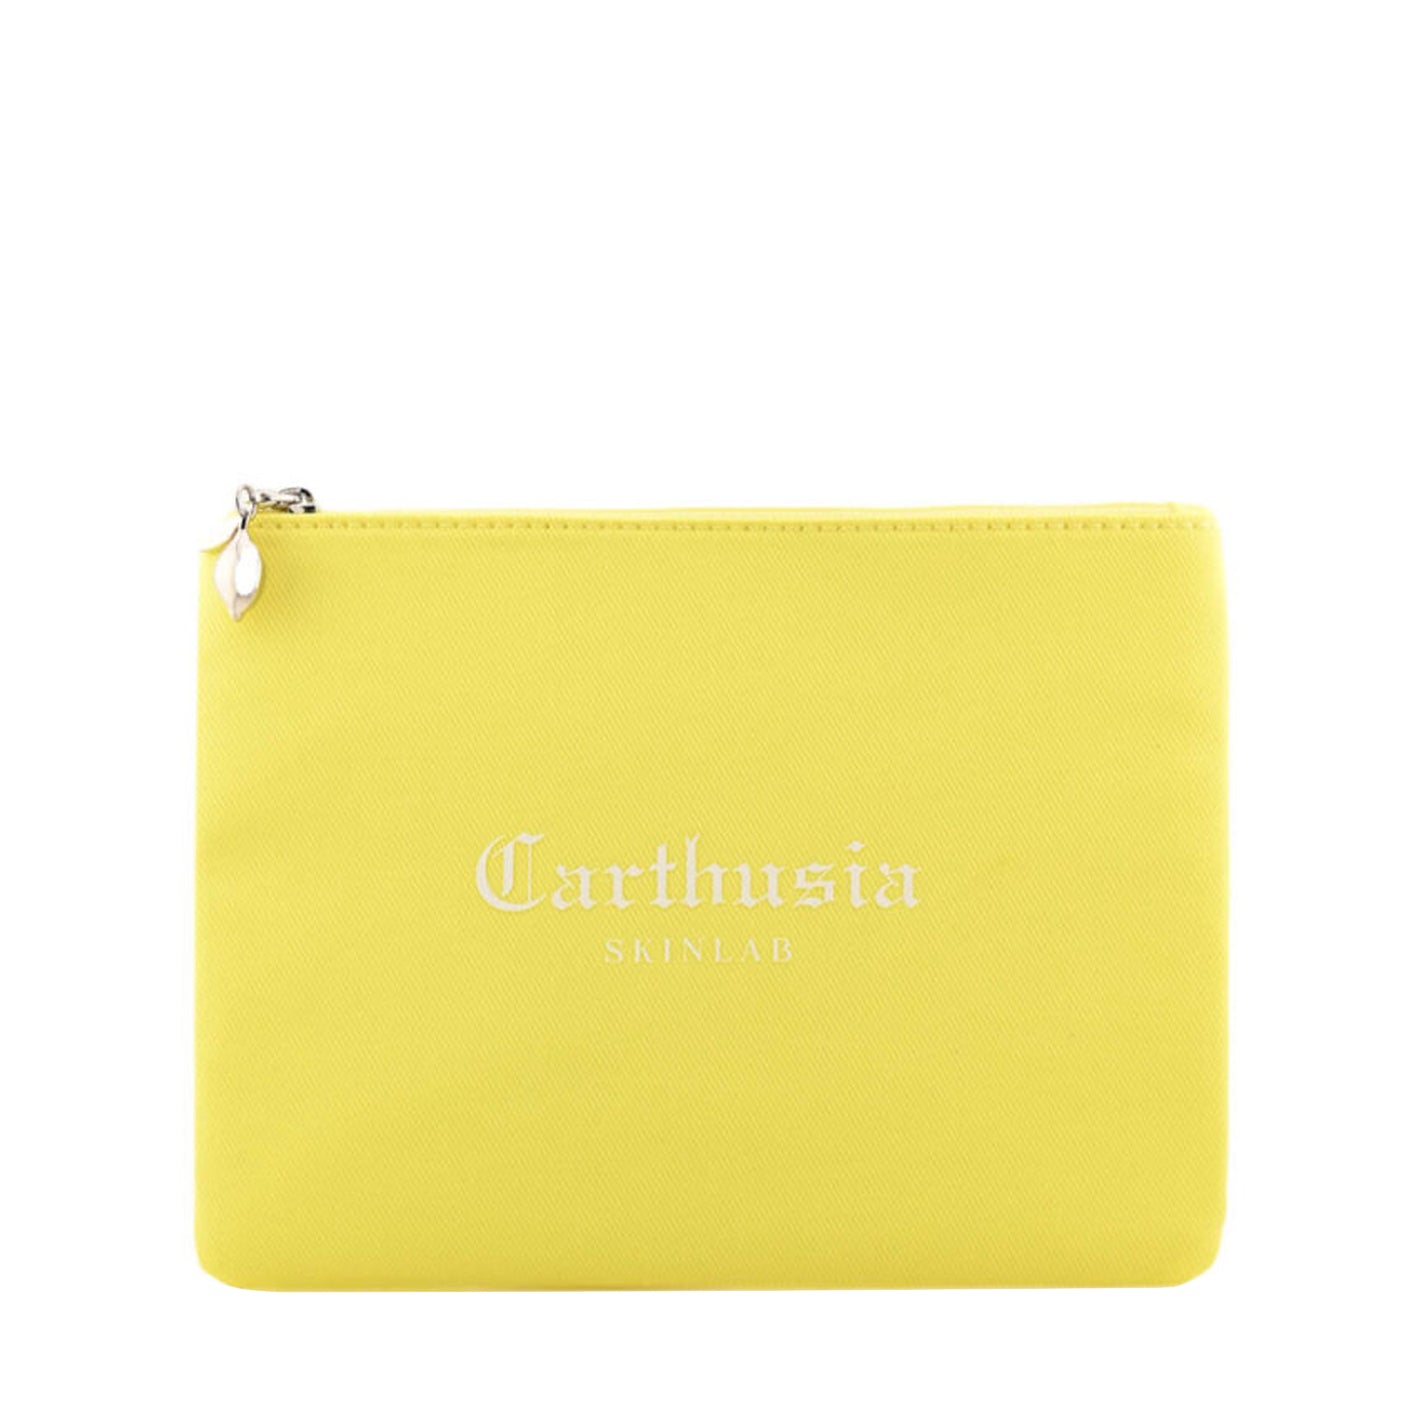 CARTHUSIA Lemon Garden Travel Kit - Value $145